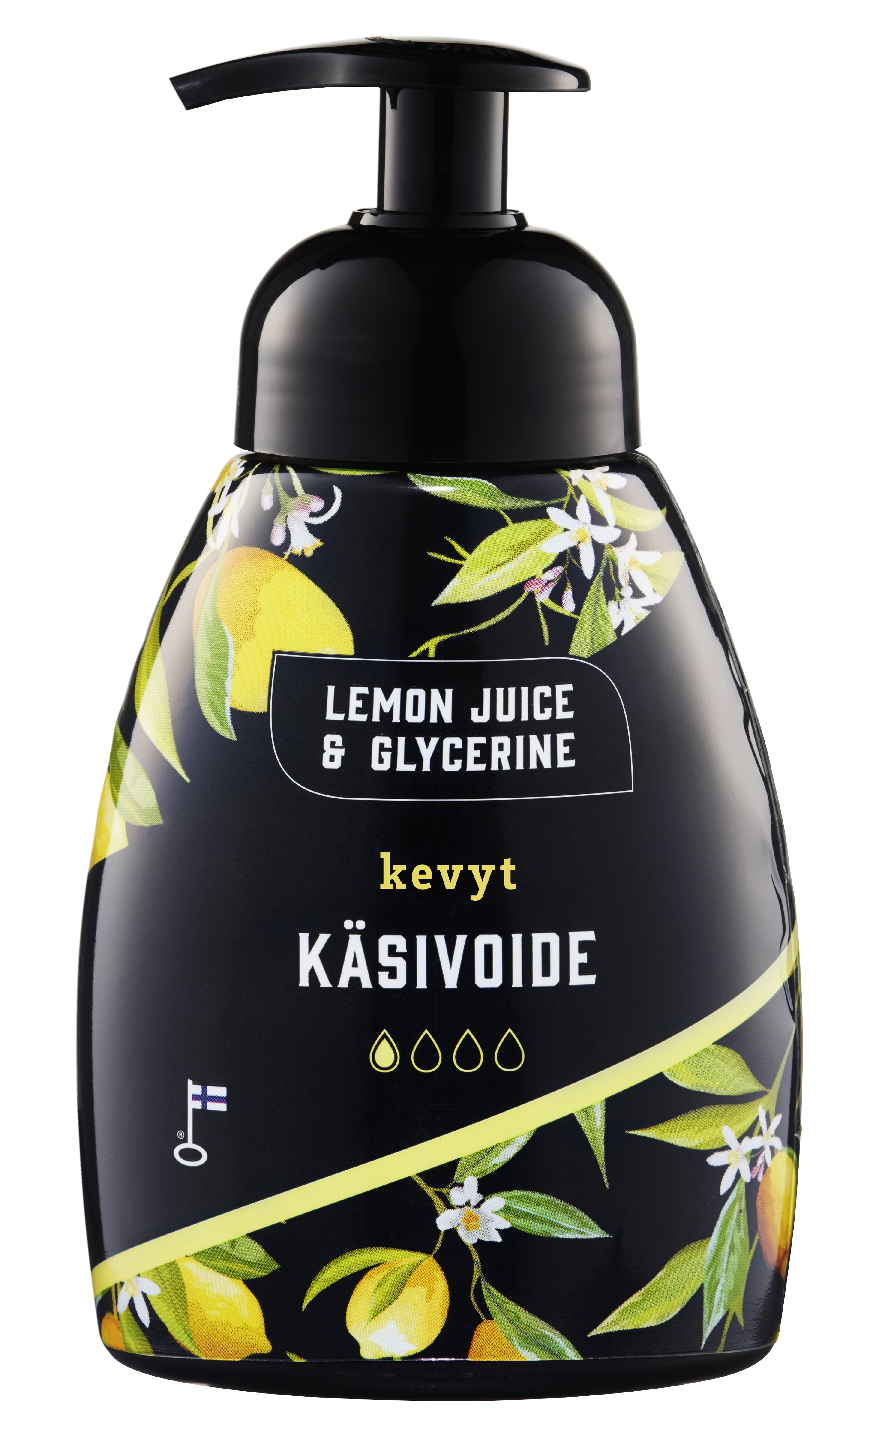 Lemon Juice & Glycerinel Kevyt käsivoide 250m